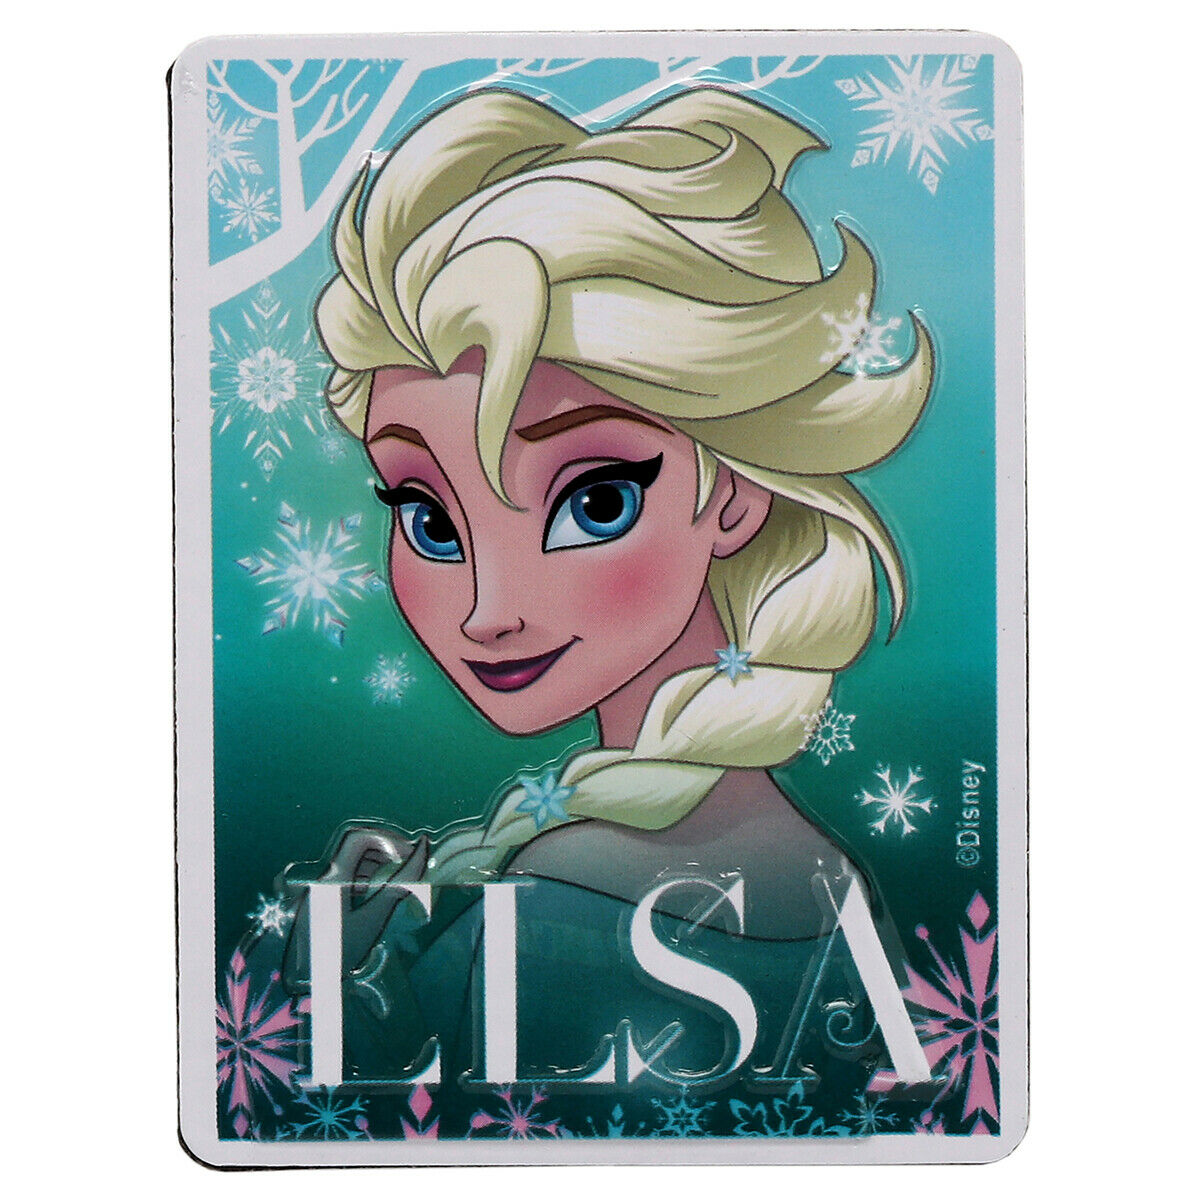 Elsa 90165419-S Frozen Embossed Metal Magnet